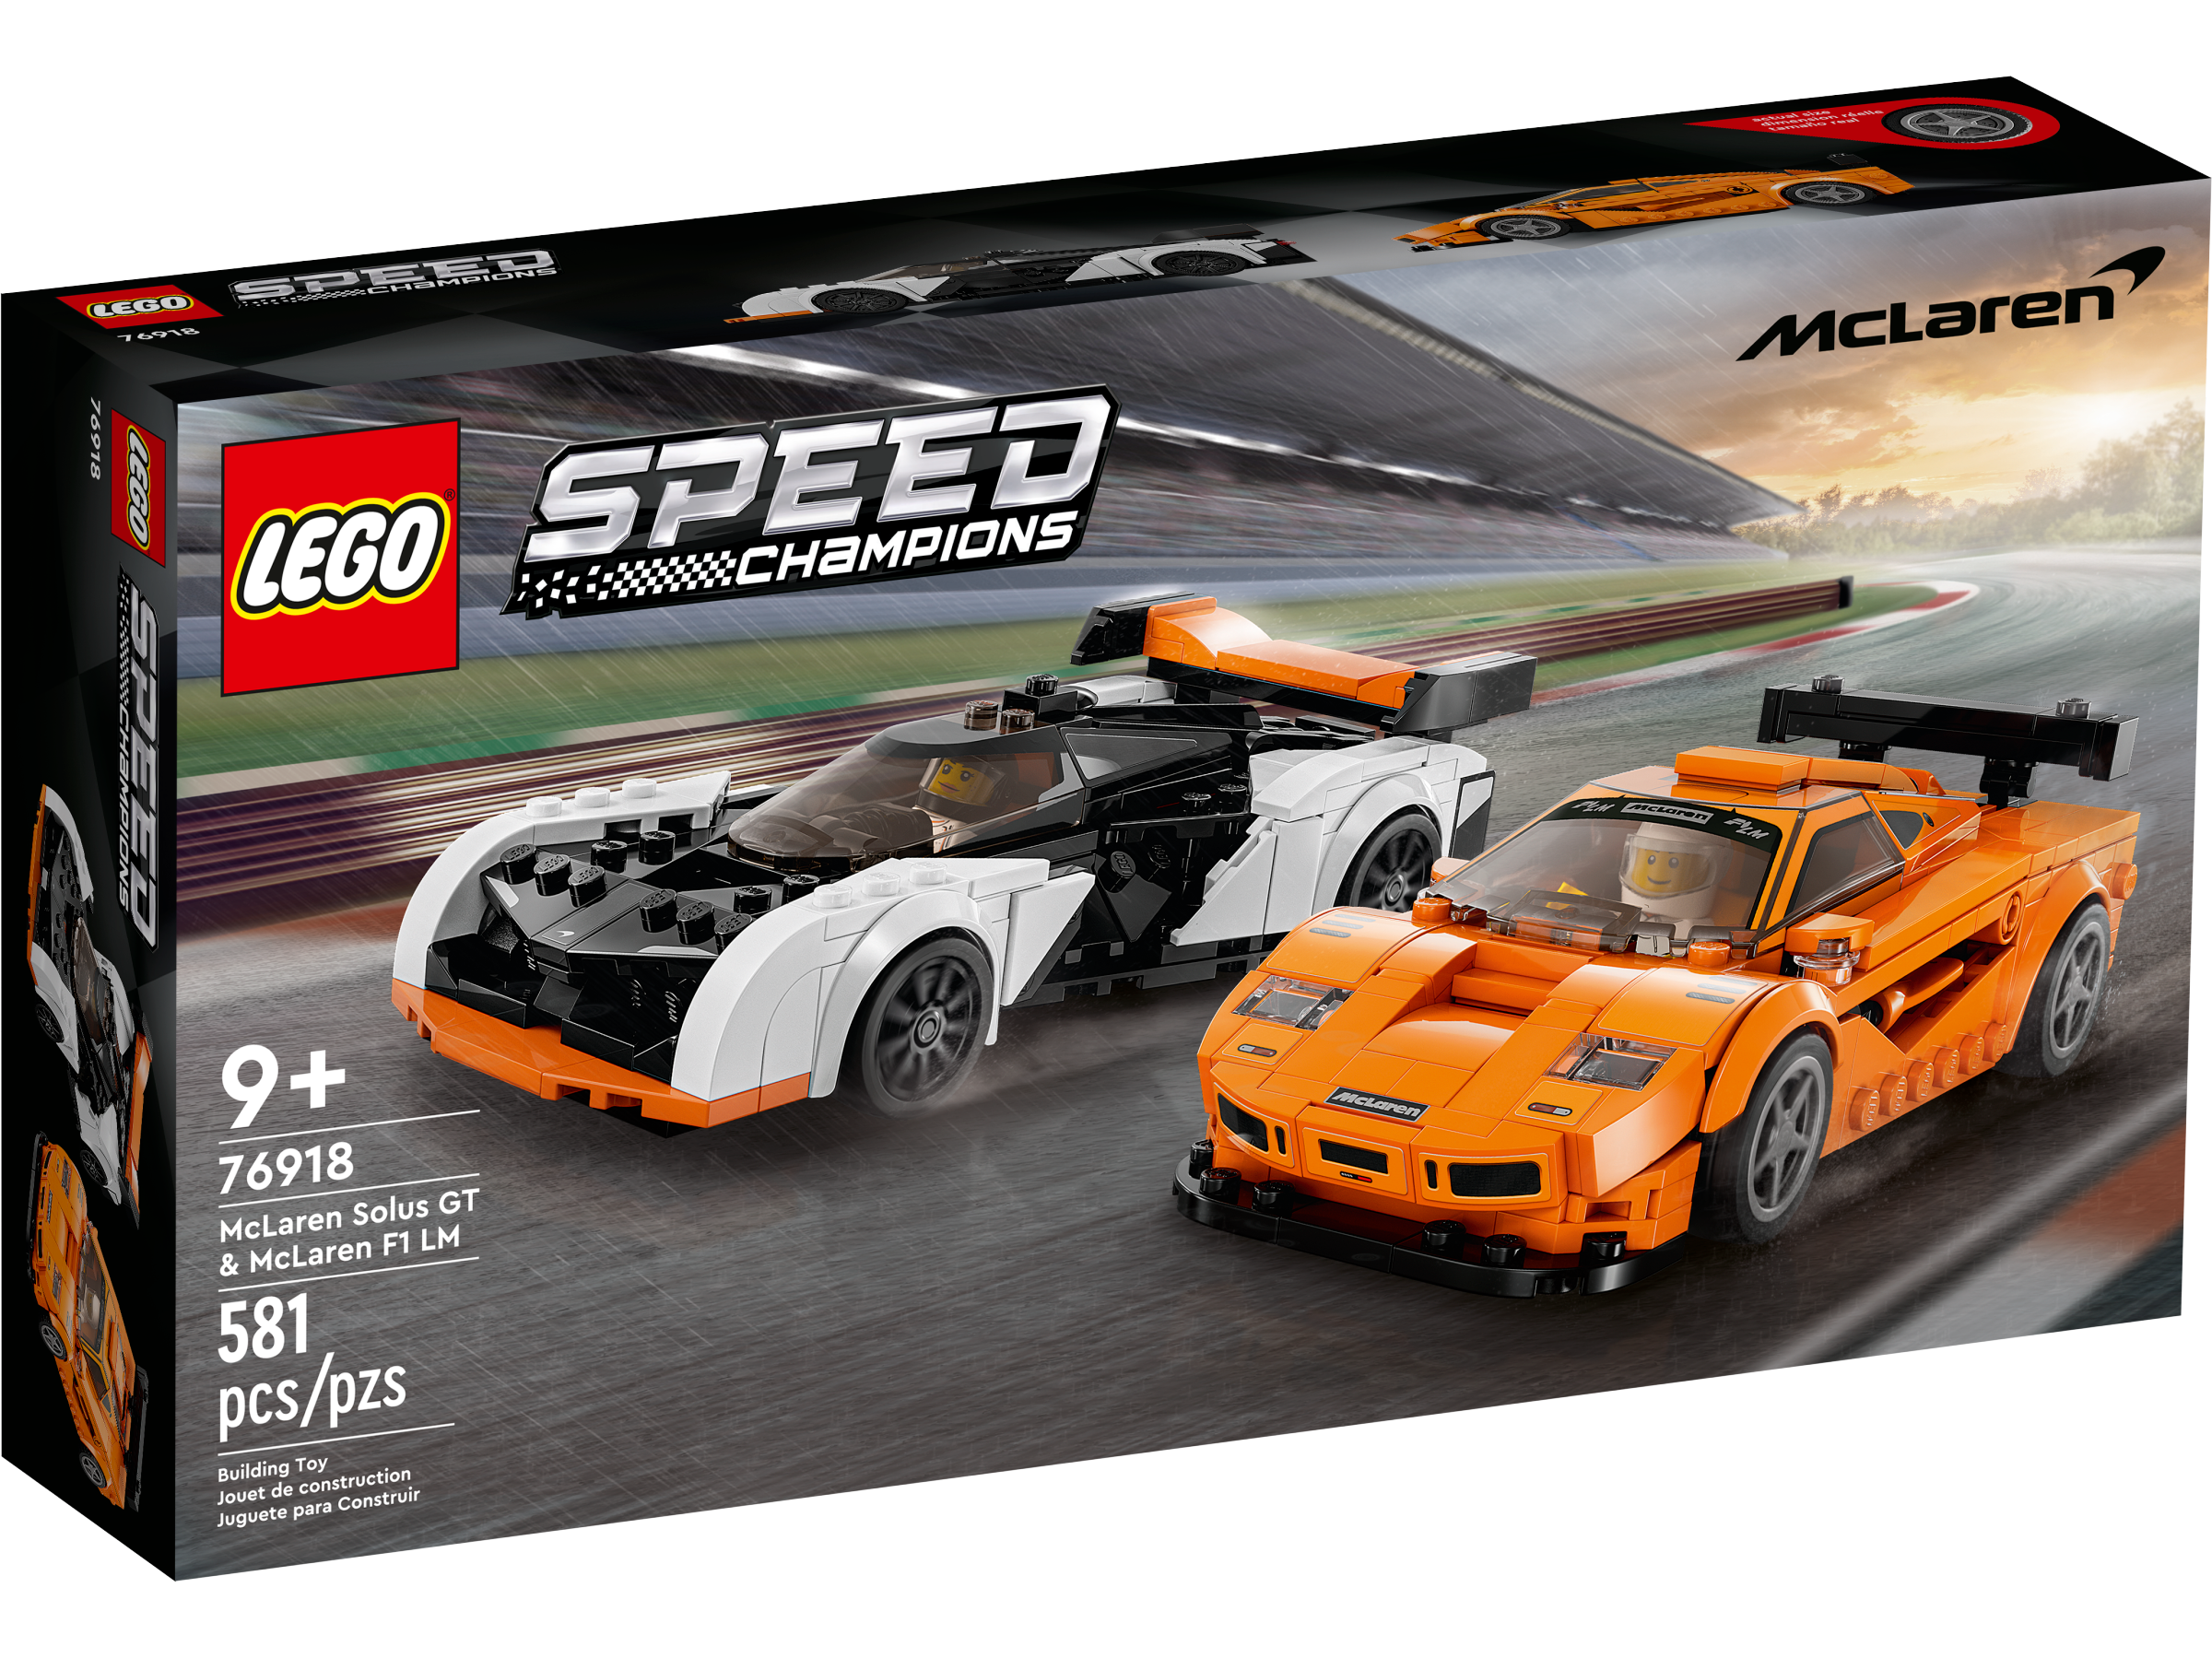 Lego Speed Coches De Marca